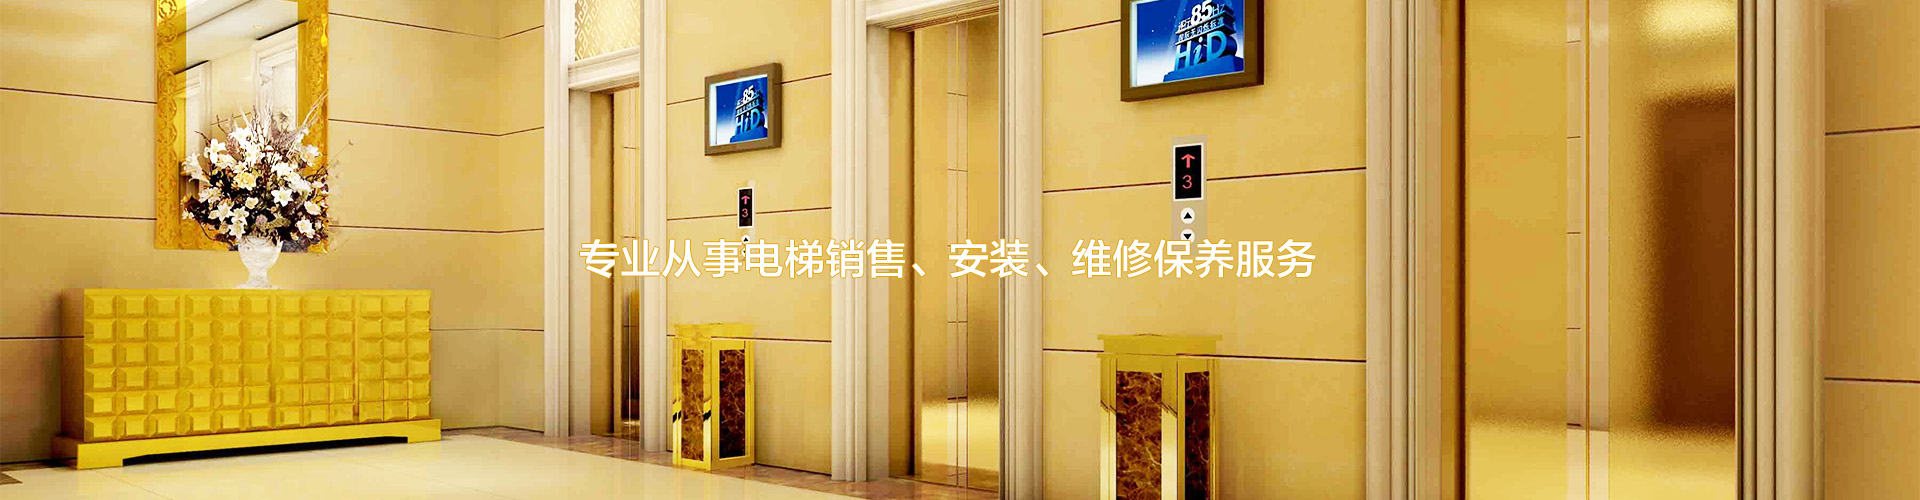 广州电梯加装,广州旧楼加装电梯,广州电梯供应商,广州电梯维修保养